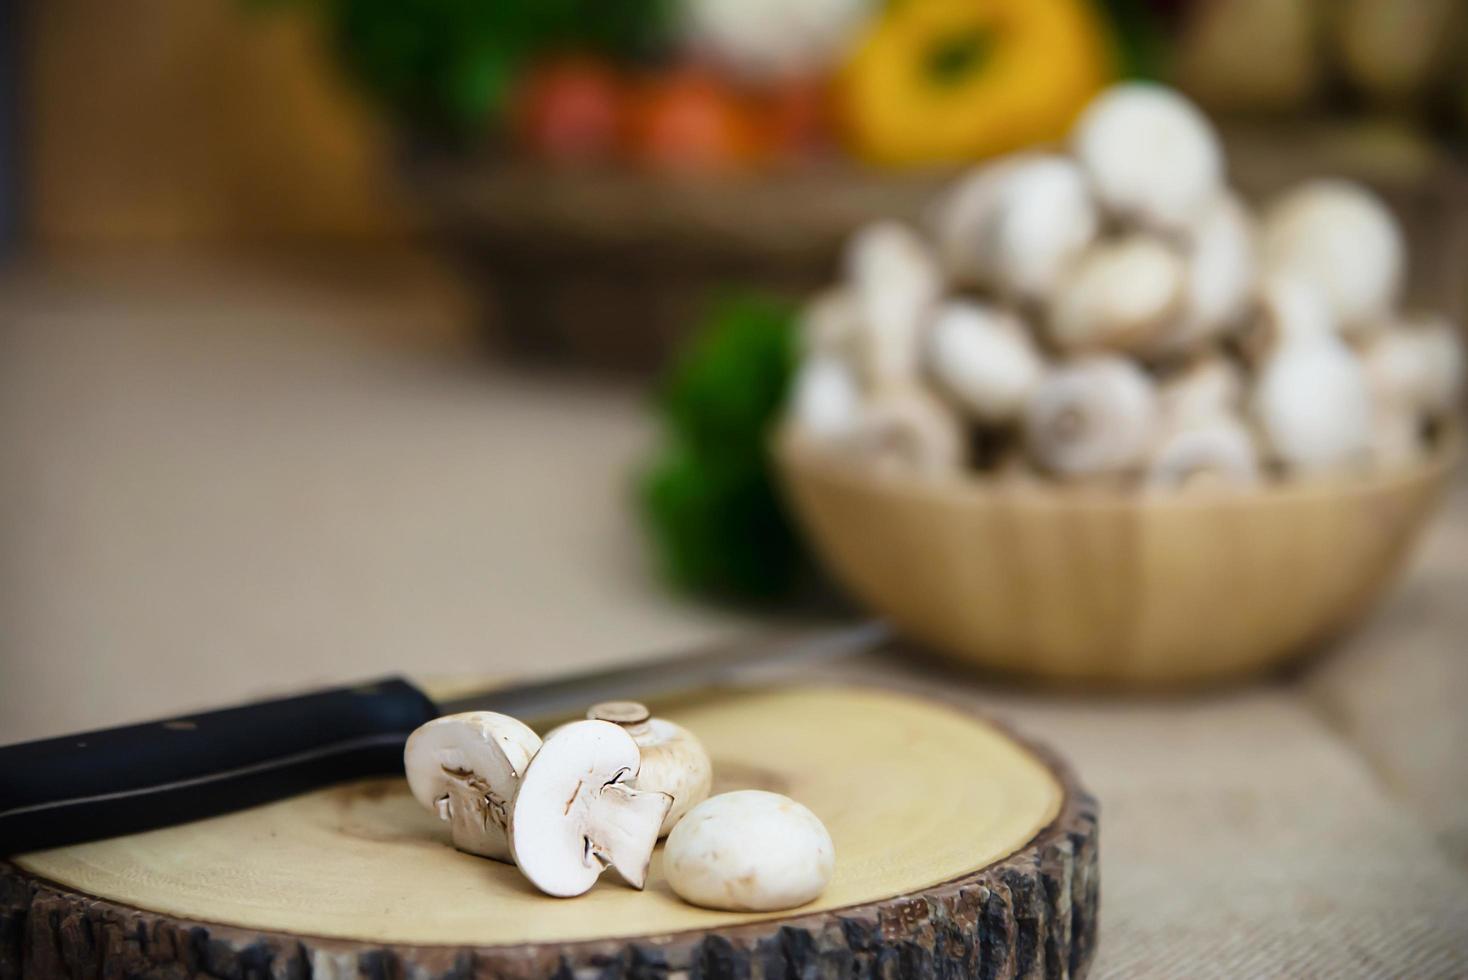 Fresh champignon mushroom vegetable in the kitchen - fresh mushroom vegetable cooking concept photo